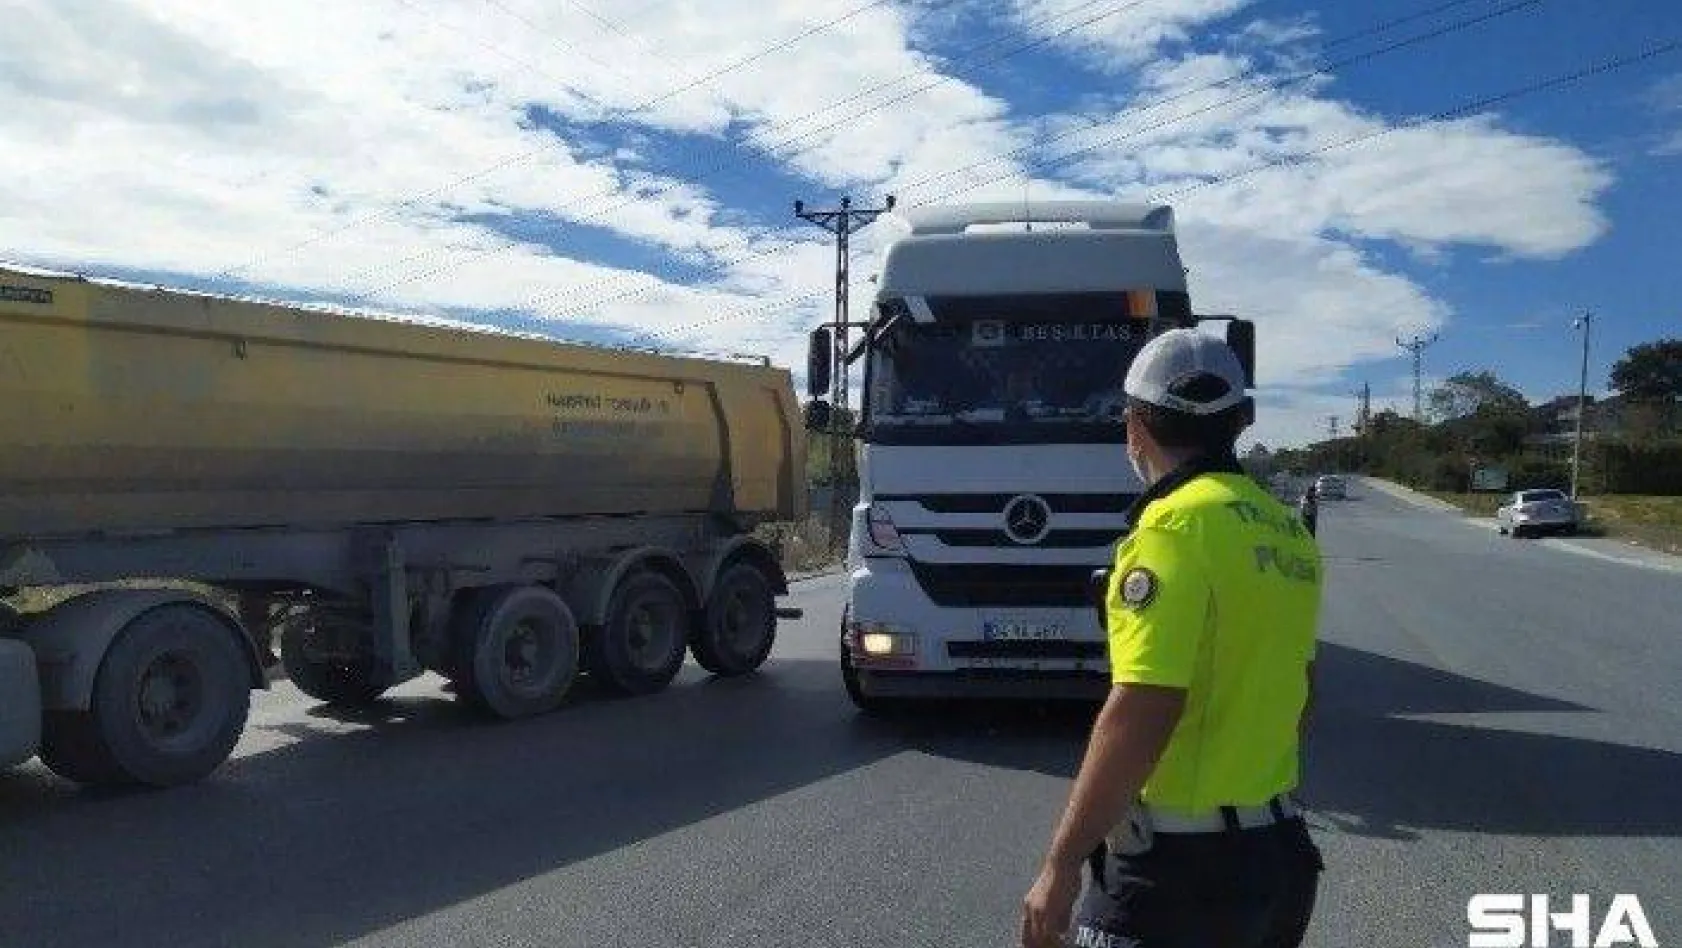 İstanbul'da hafriyat kamyonları denetlendi